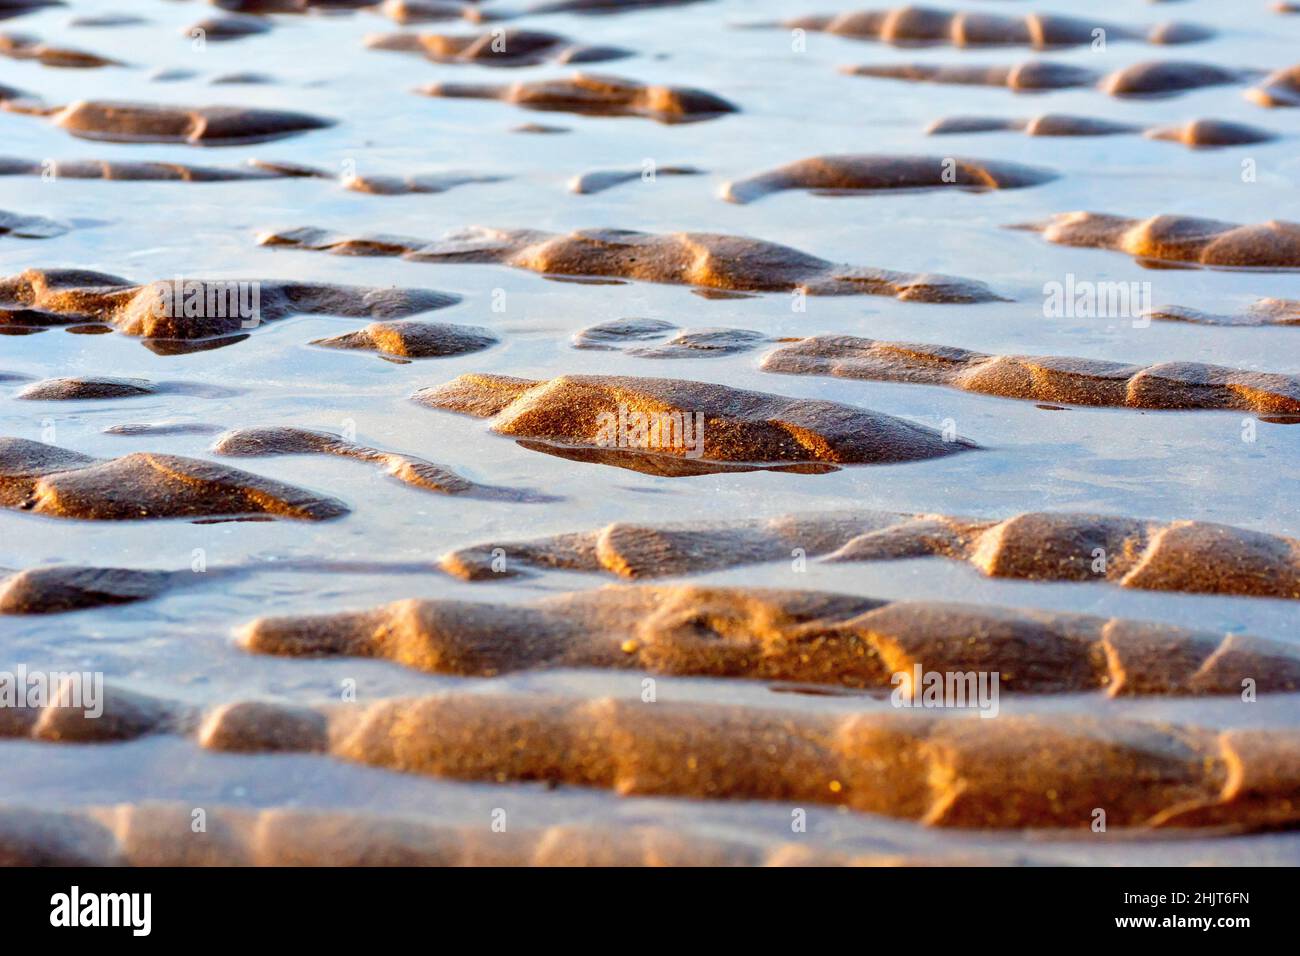 Un plan de bas niveau des ondulations créées dans les sables d'une plage avec le reflux et le flux des marées, illuminés obliquement par un soleil d'après-midi hiverne. Banque D'Images